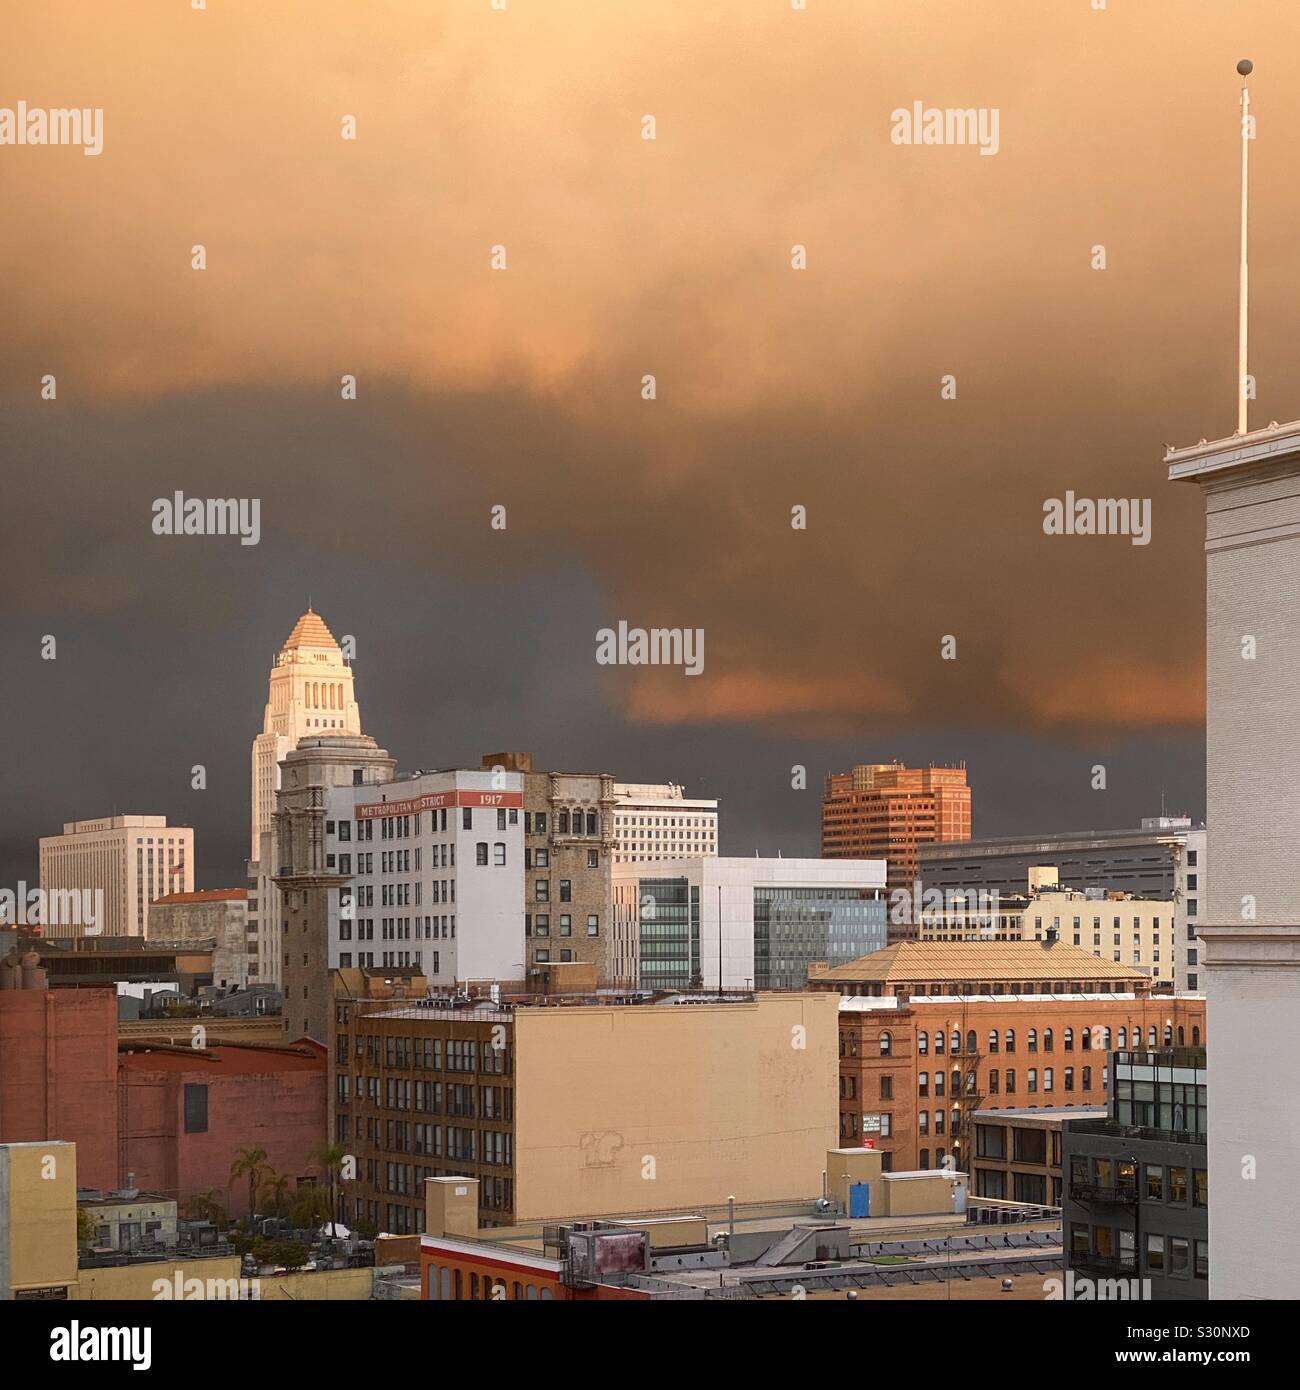 LOS ANGELES, Ca, DEZ 2019: Skyline der Innenstadt mit dem Rathaus im Hintergrund, leuchtet orange durch dramatische Wolken bei Sonnenuntergang Stockfoto